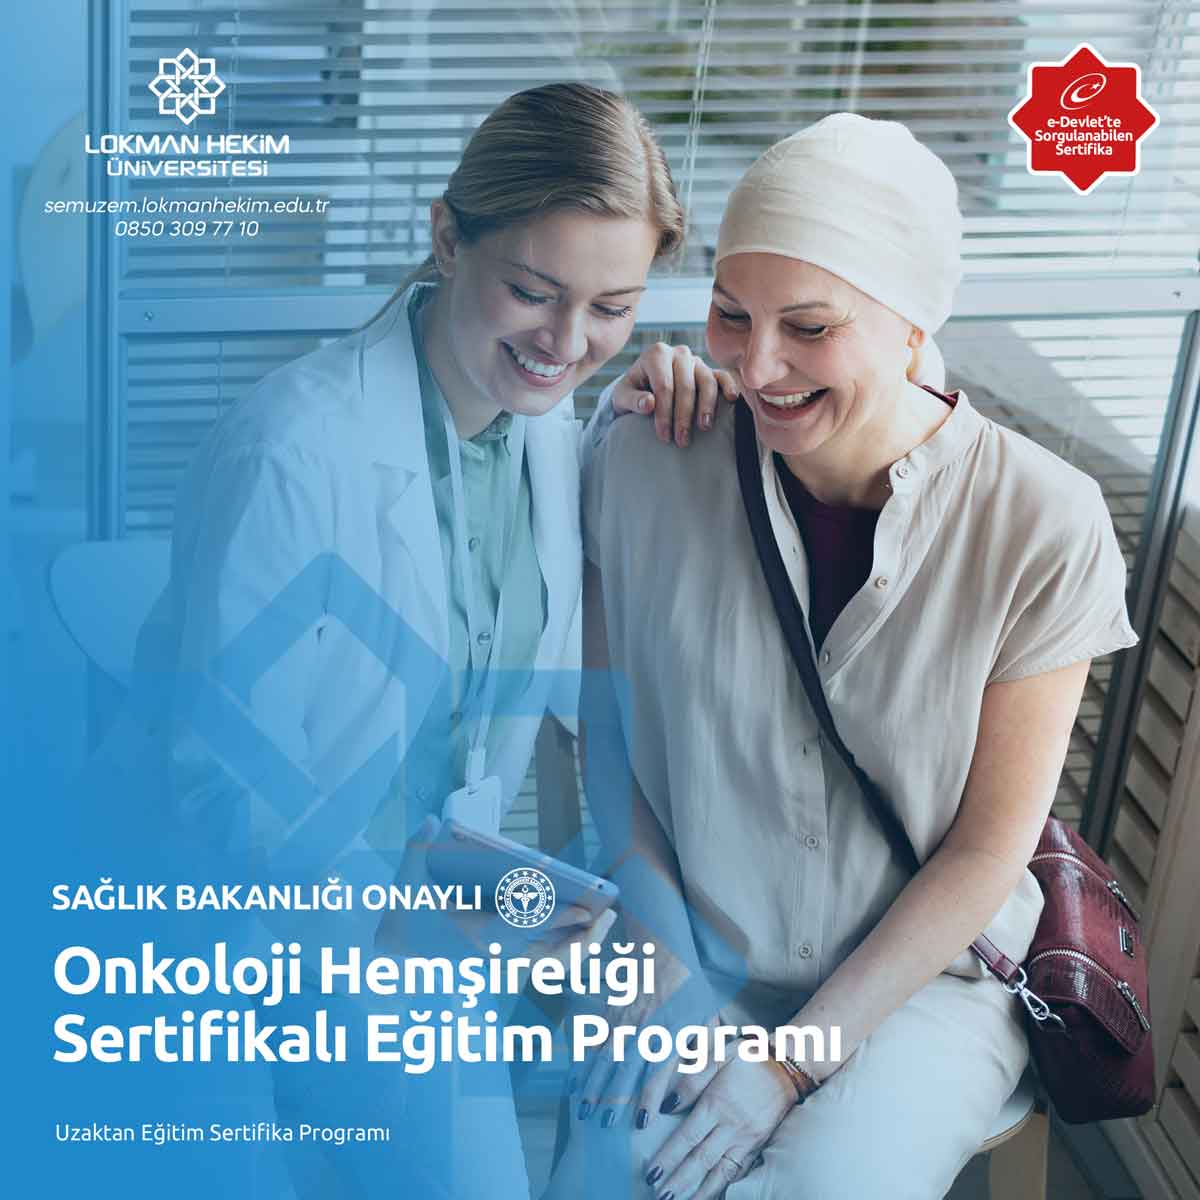 Onkoloji Hemşireliği Sertifikalı Eğitim Programı